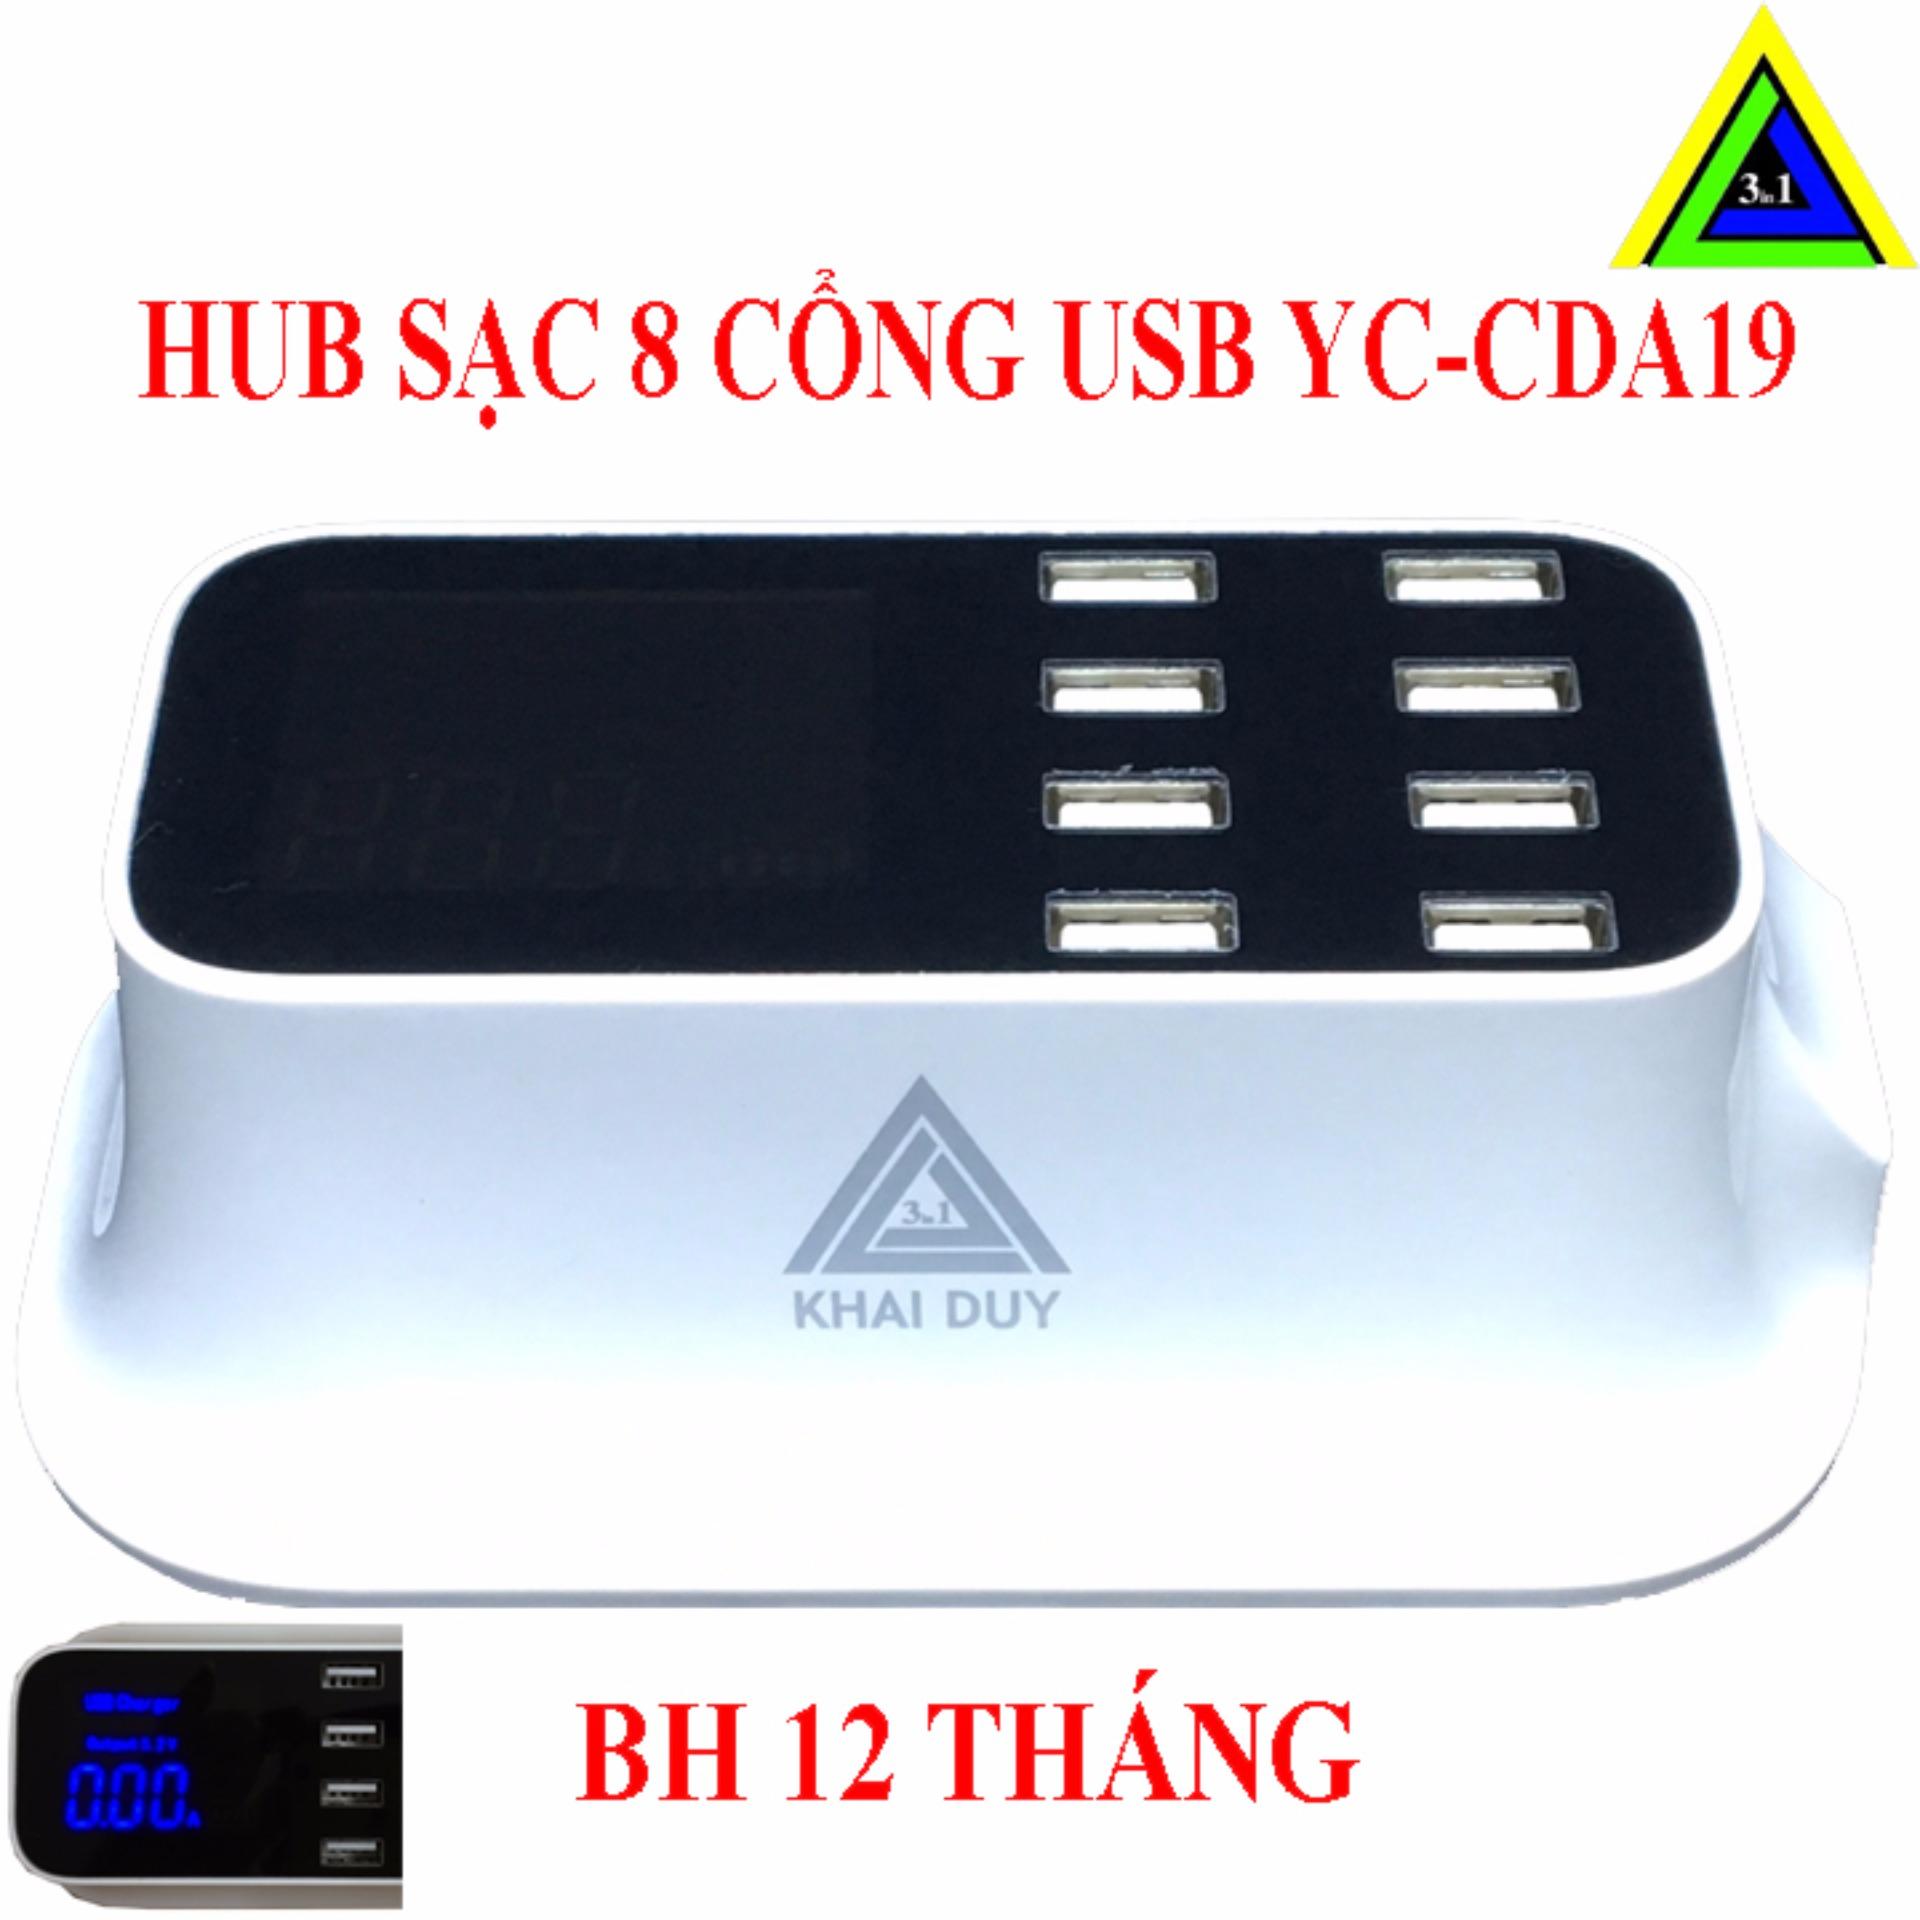 HUB SẠC USB 8 CỔNG YC-CDA19